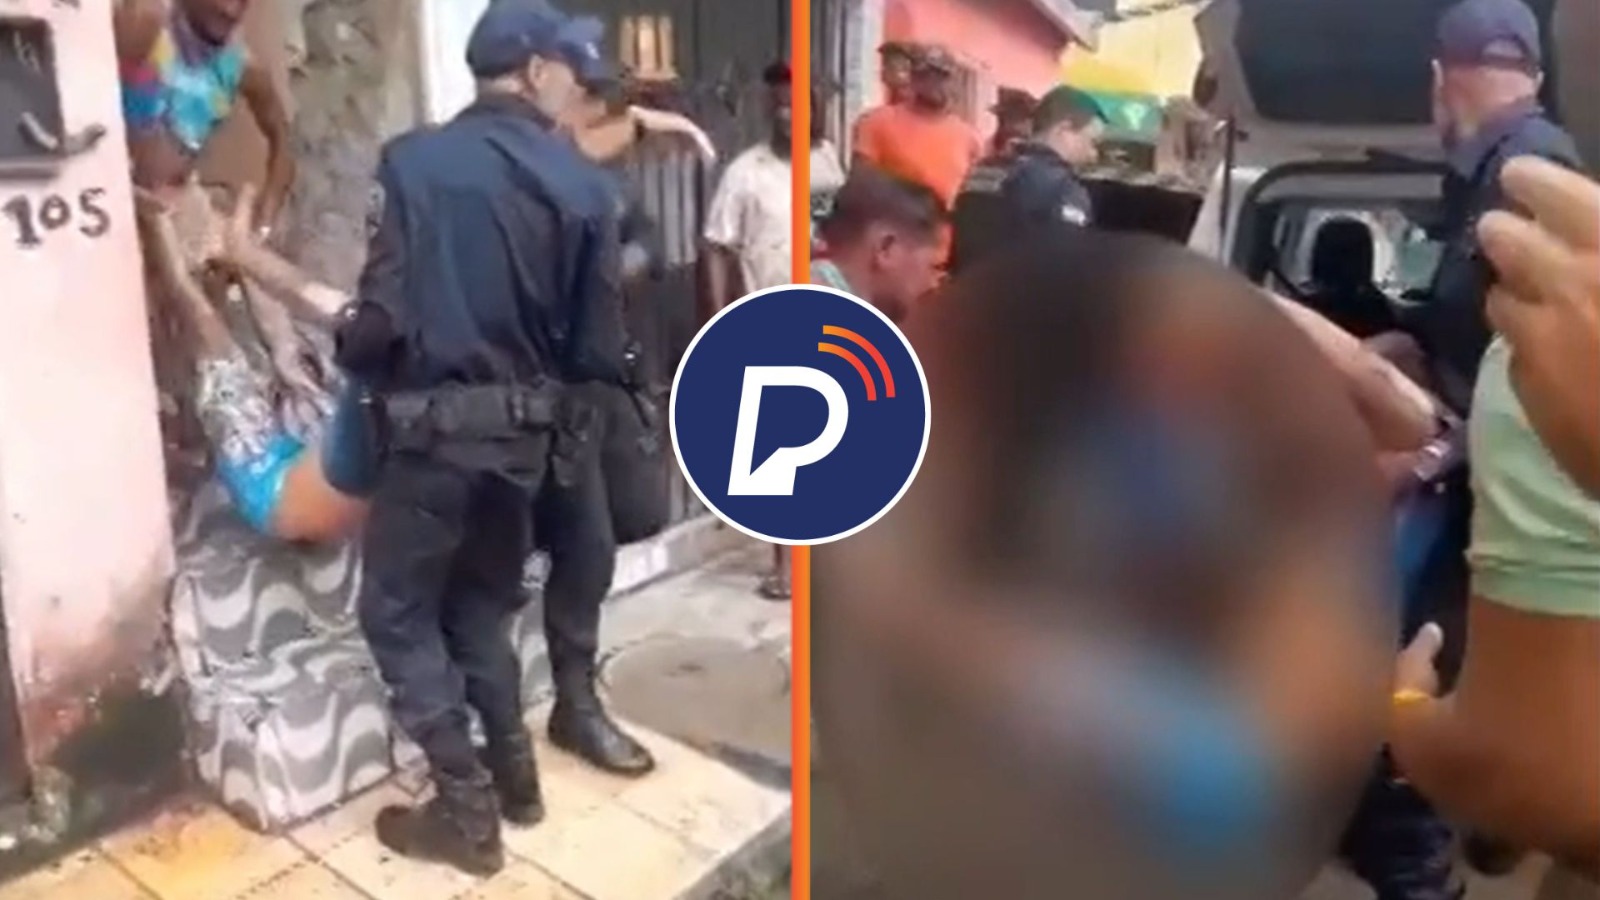 VÍDEO: No Grande Recife, homem tem braço e perna amputados após choque em fio de alta tensão